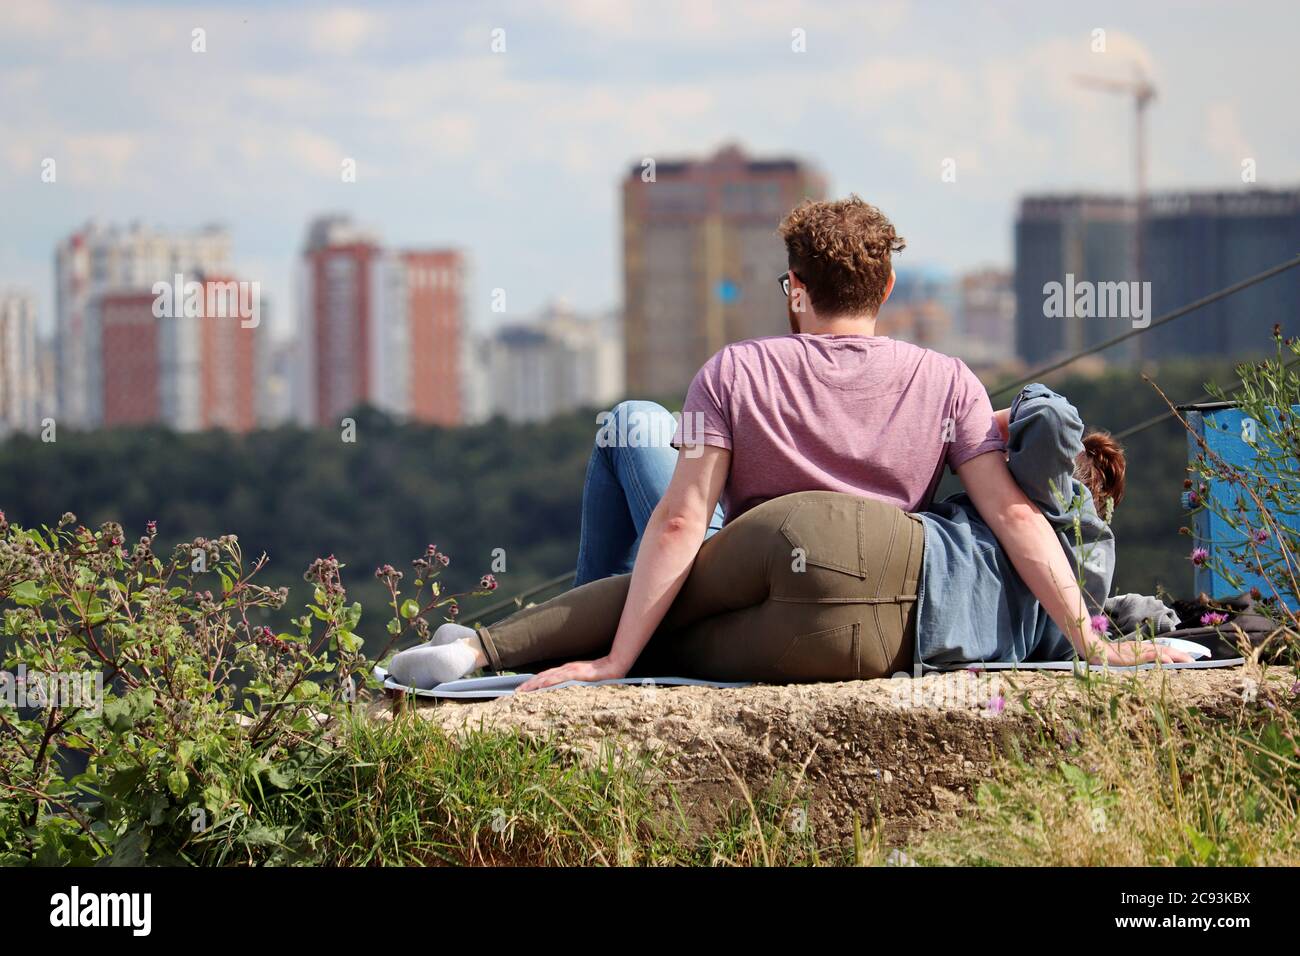 Coppia innamorata seduto in cima a una collina sullo sfondo di una città. Vacanza estiva e relax, concetto di sogno e pianificazione futura, appuntamento romantico Foto Stock